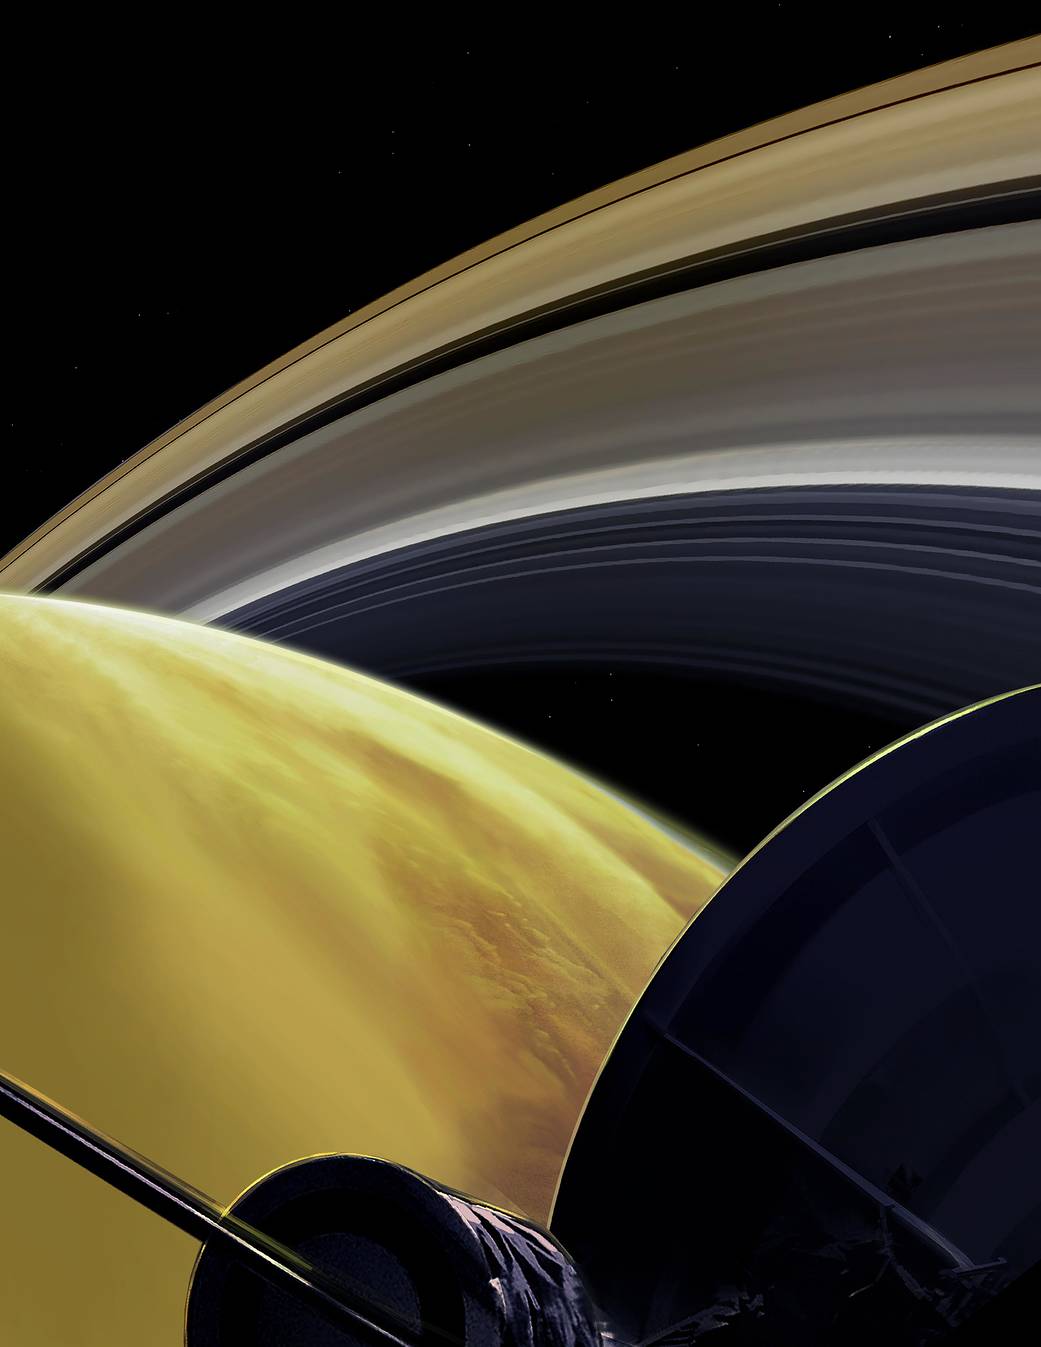 Concepção artística dos últimos momentos da Cassini. A sonda se jogou na densa atmosfera de Saturno para se autodestruir ao final da missão e não representar perigo para alguma das luas do planeta. (Créditos da imagem: NASA/JPL-Caltech)